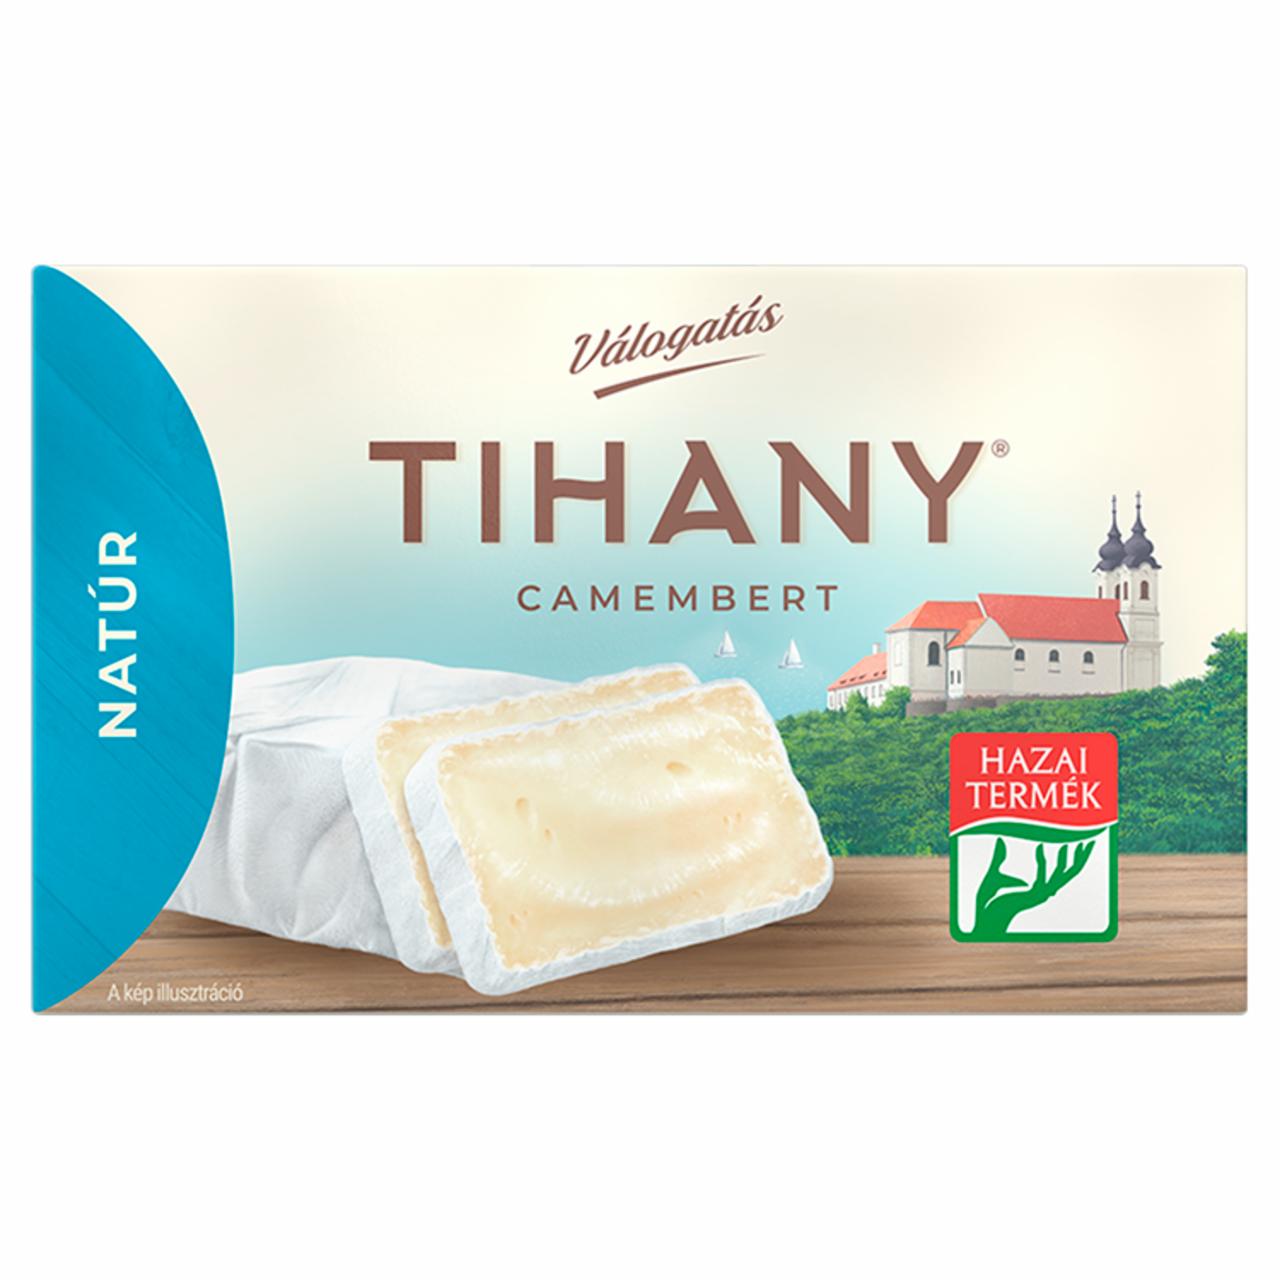 Képek - Tihany Válogatás Camembert natúr zsíros lágy sajt 120 g